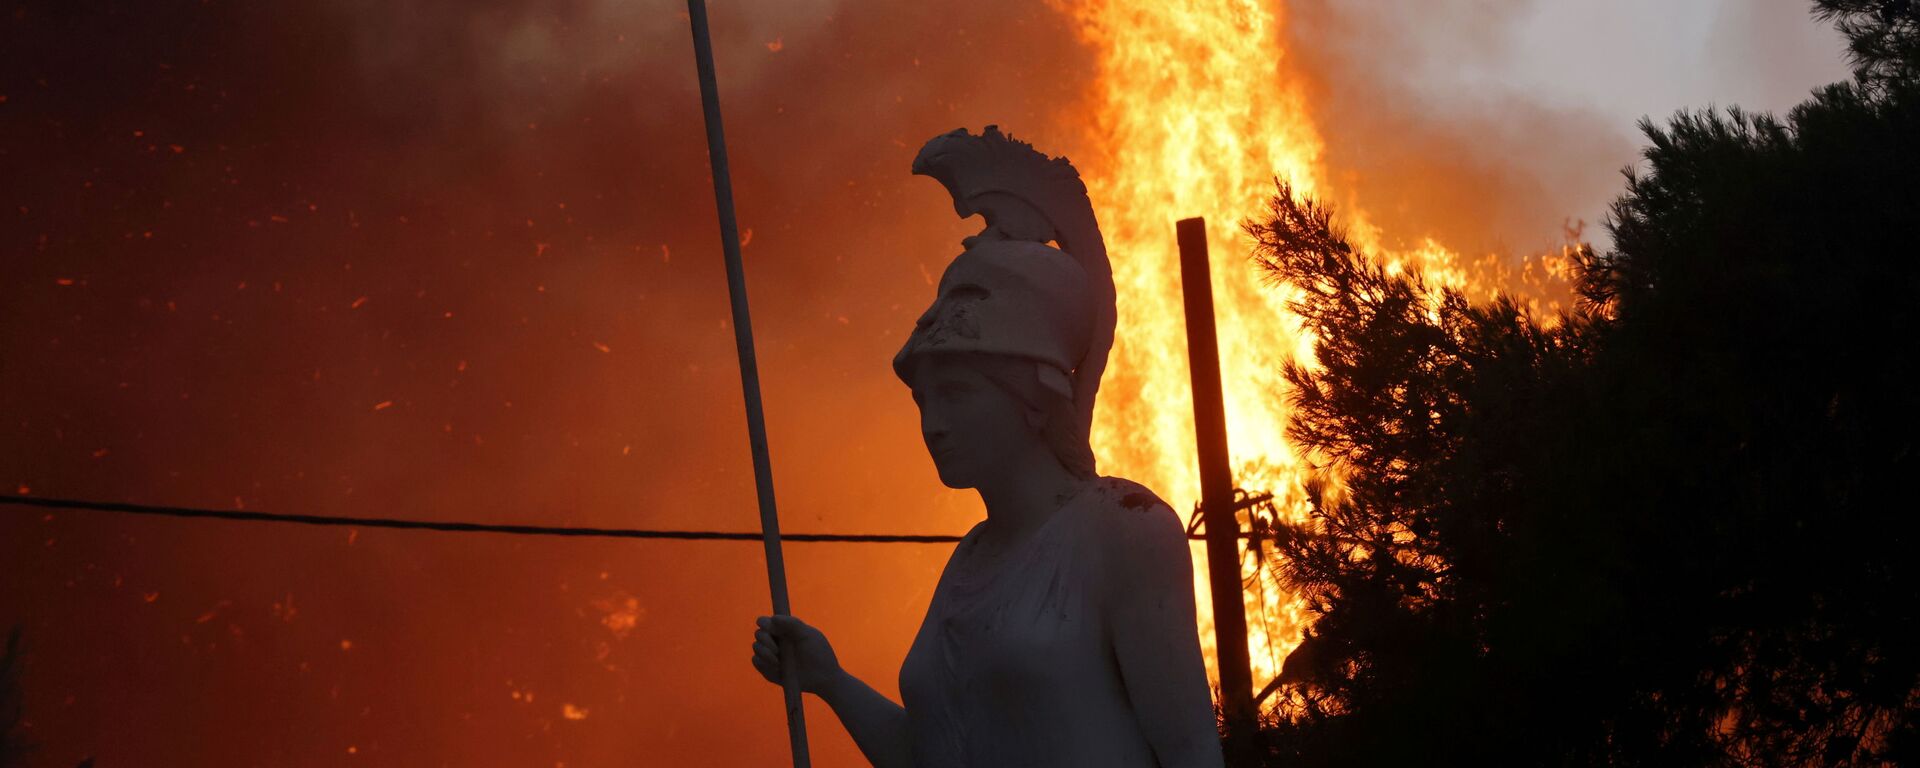 Статуя Афины на фоне природных пожаров в северном пригороде Афин  - Sputnik Mundo, 1920, 04.08.2021